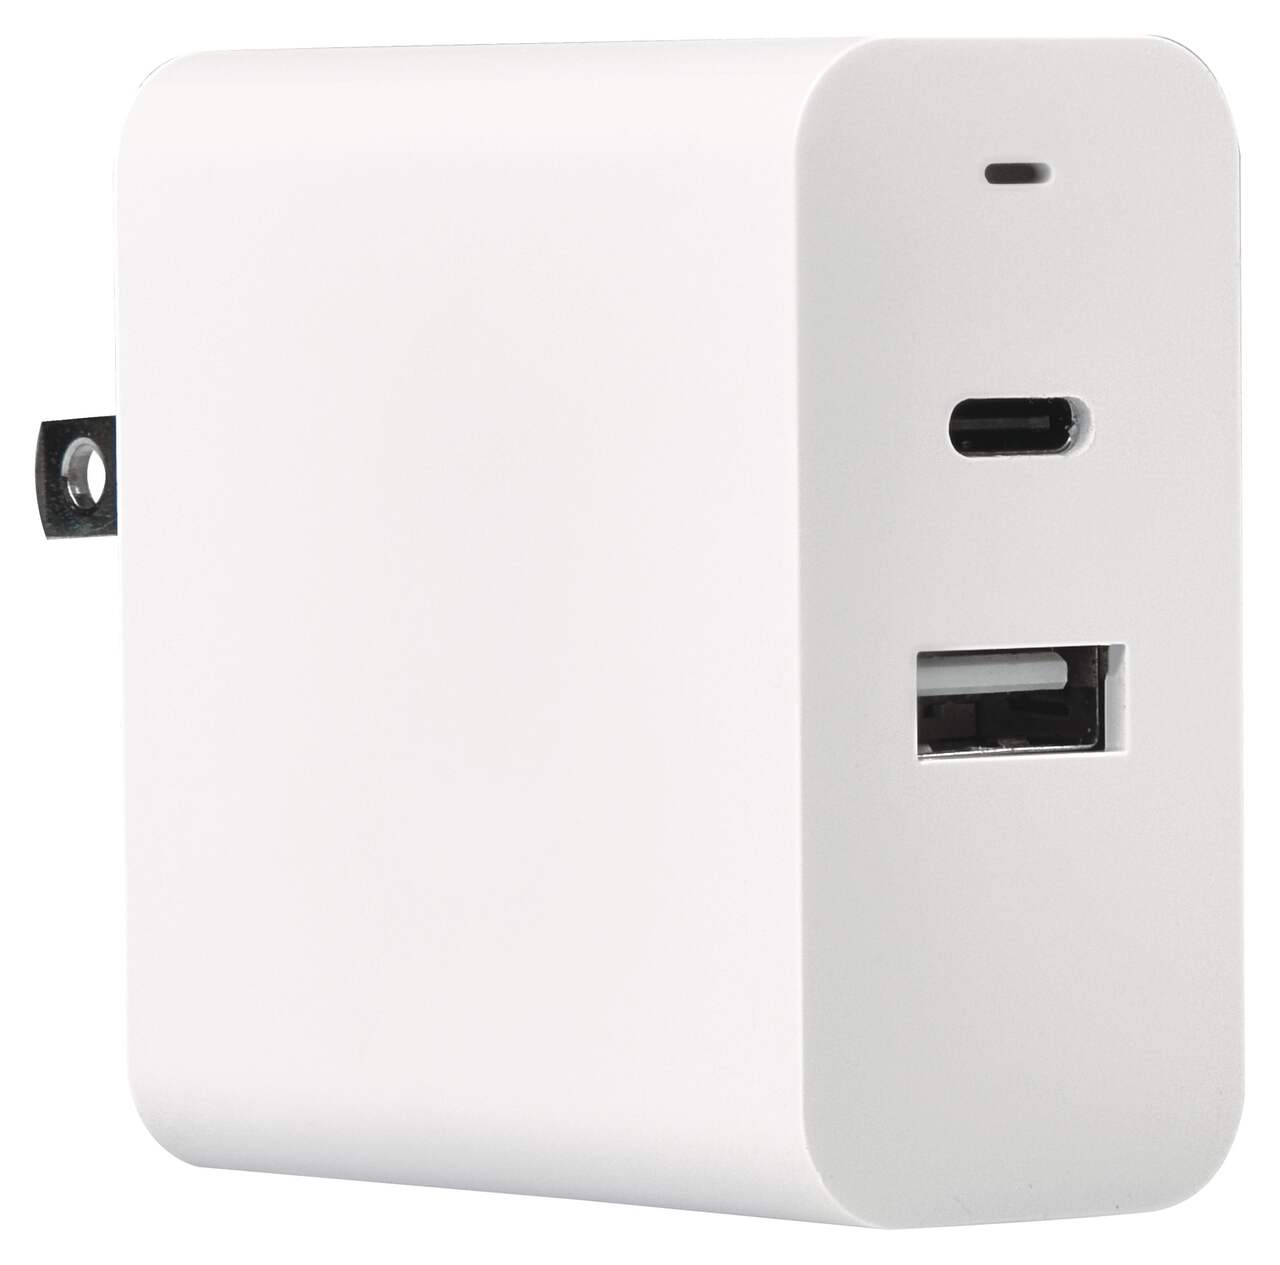 Acheter Double Adaptateur Secteur pour iPad / iPad 2 moins cher, Accessoires divers pour iPad